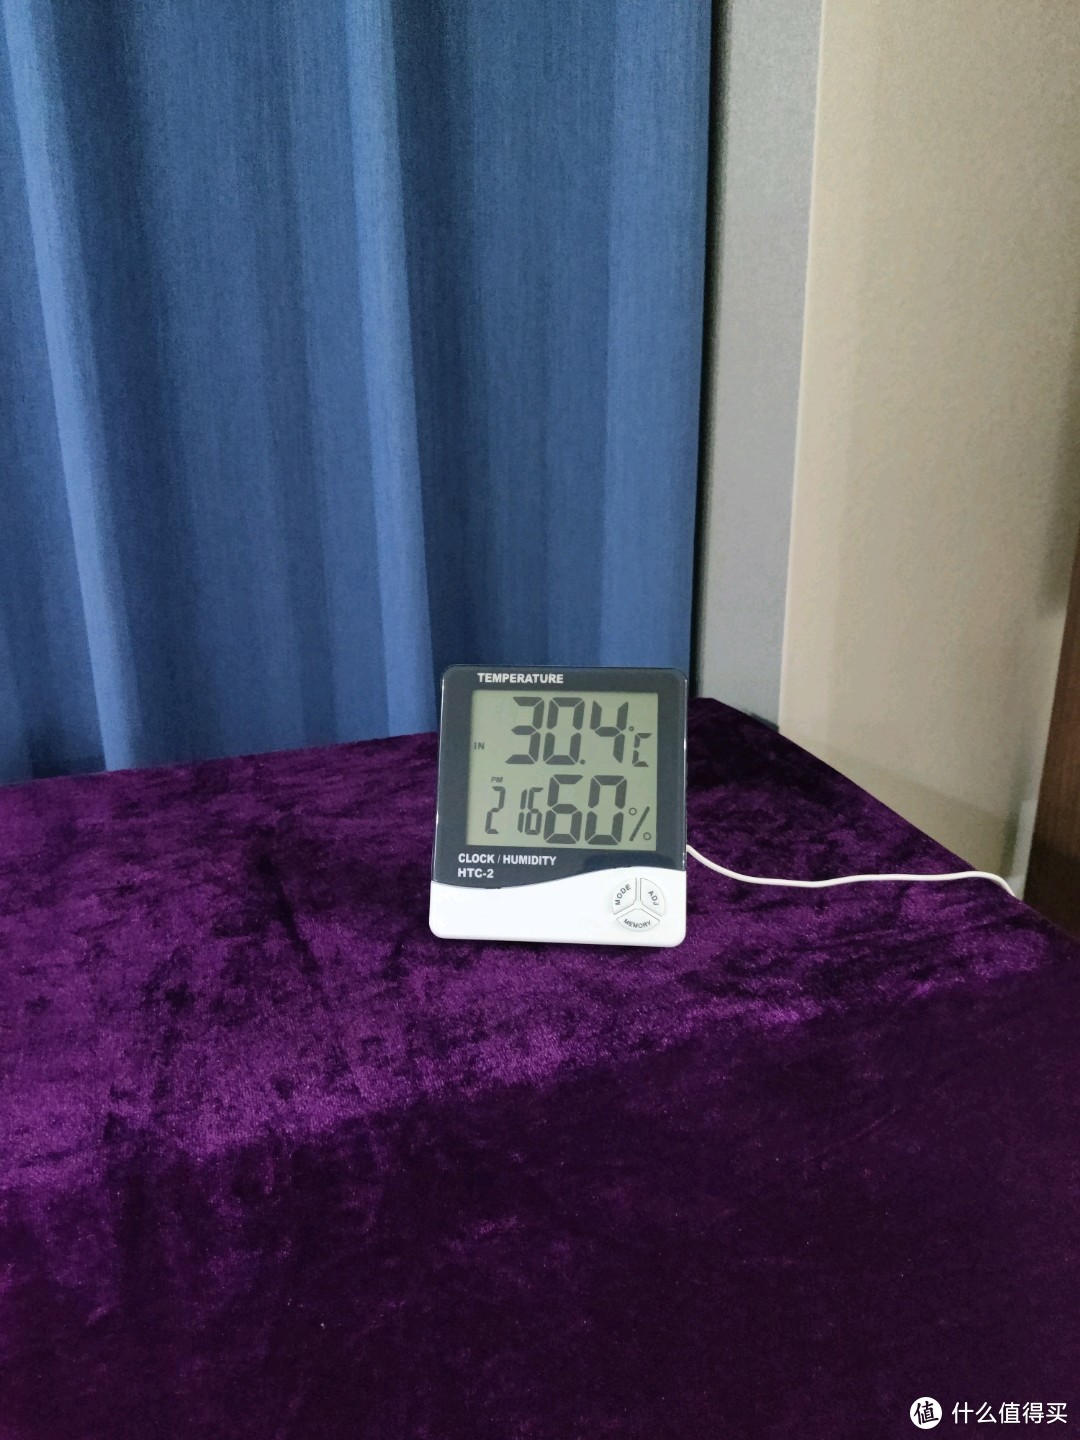 室温30度手机玩游戏感觉_手机游戏正常温度_手机玩游戏温度40°正常吗